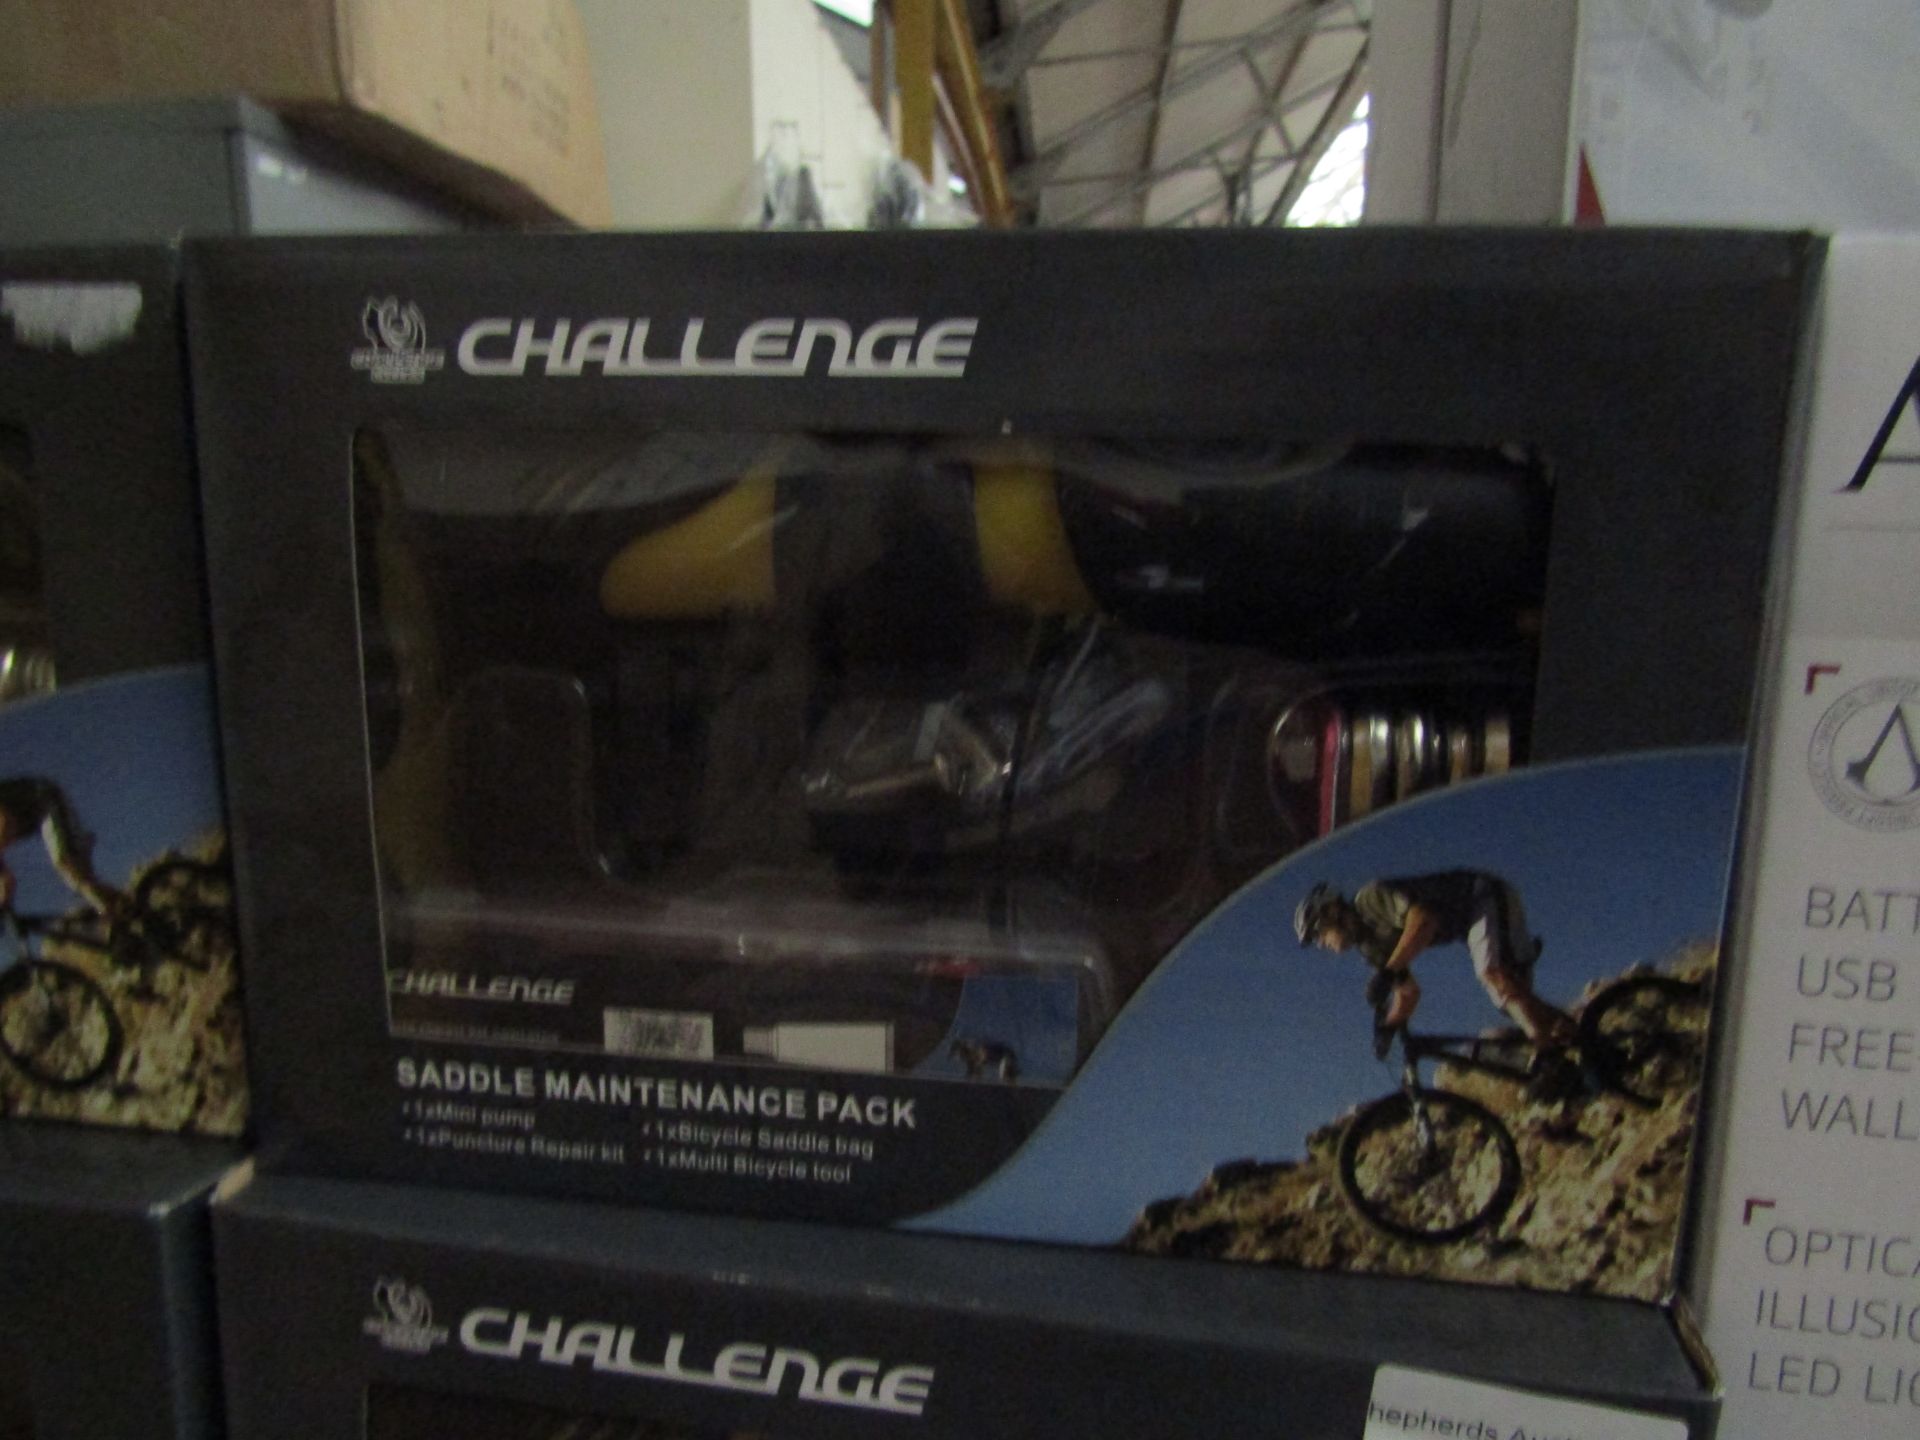 Challenge Bike Maintenance Pack. Incl Pump, Repair kit, Multitool & Bag. New & Boxed